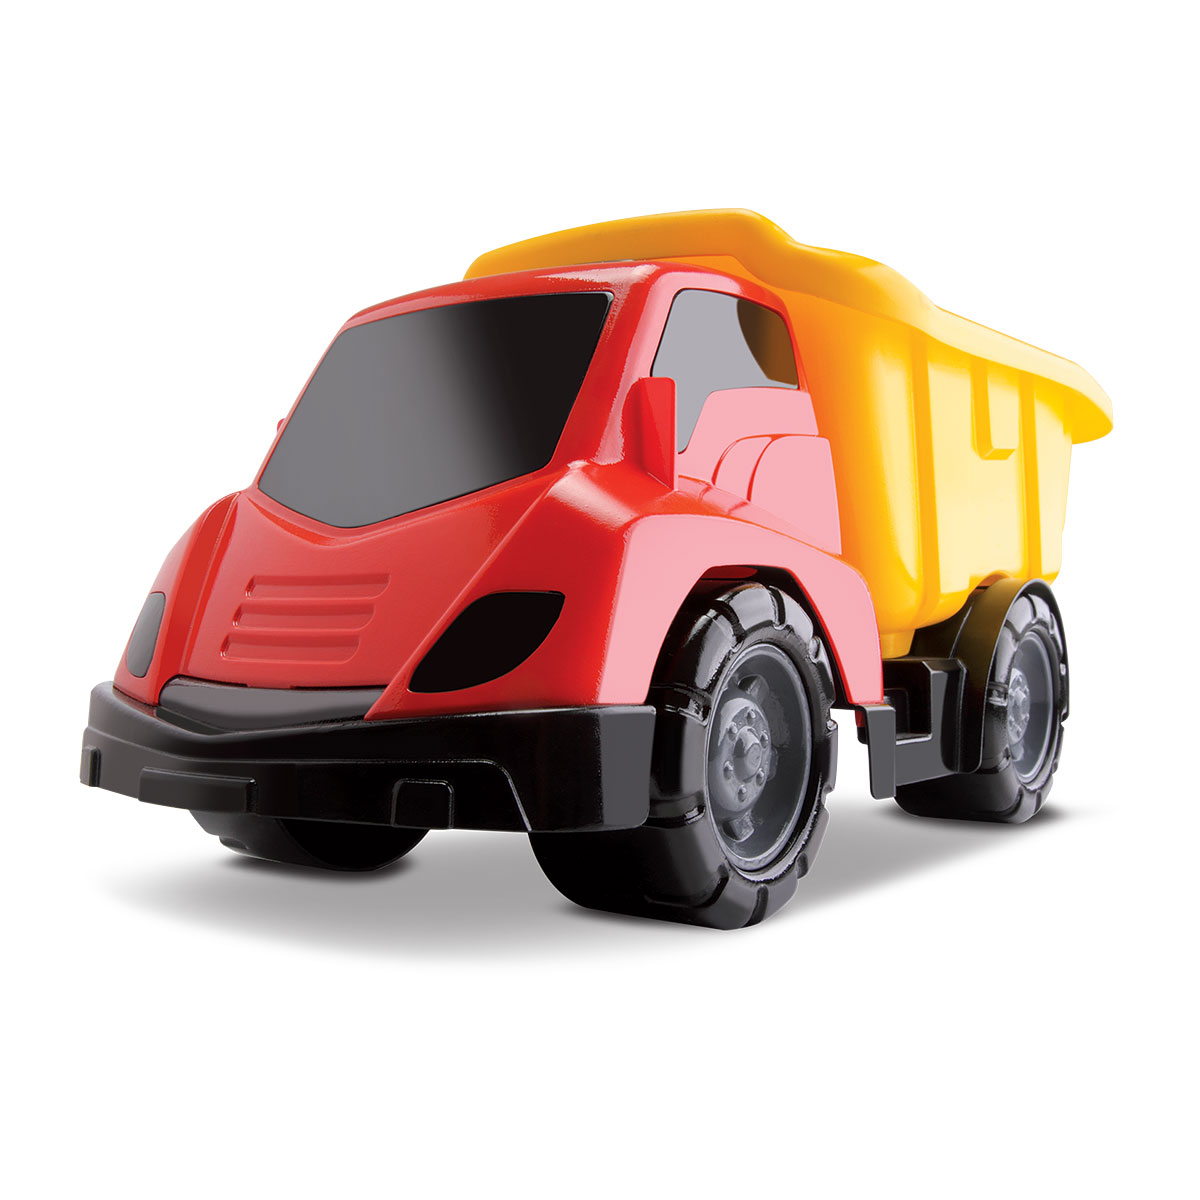 Caminhão Brinquedo Basculante K-samba Com Acessorio Colorido